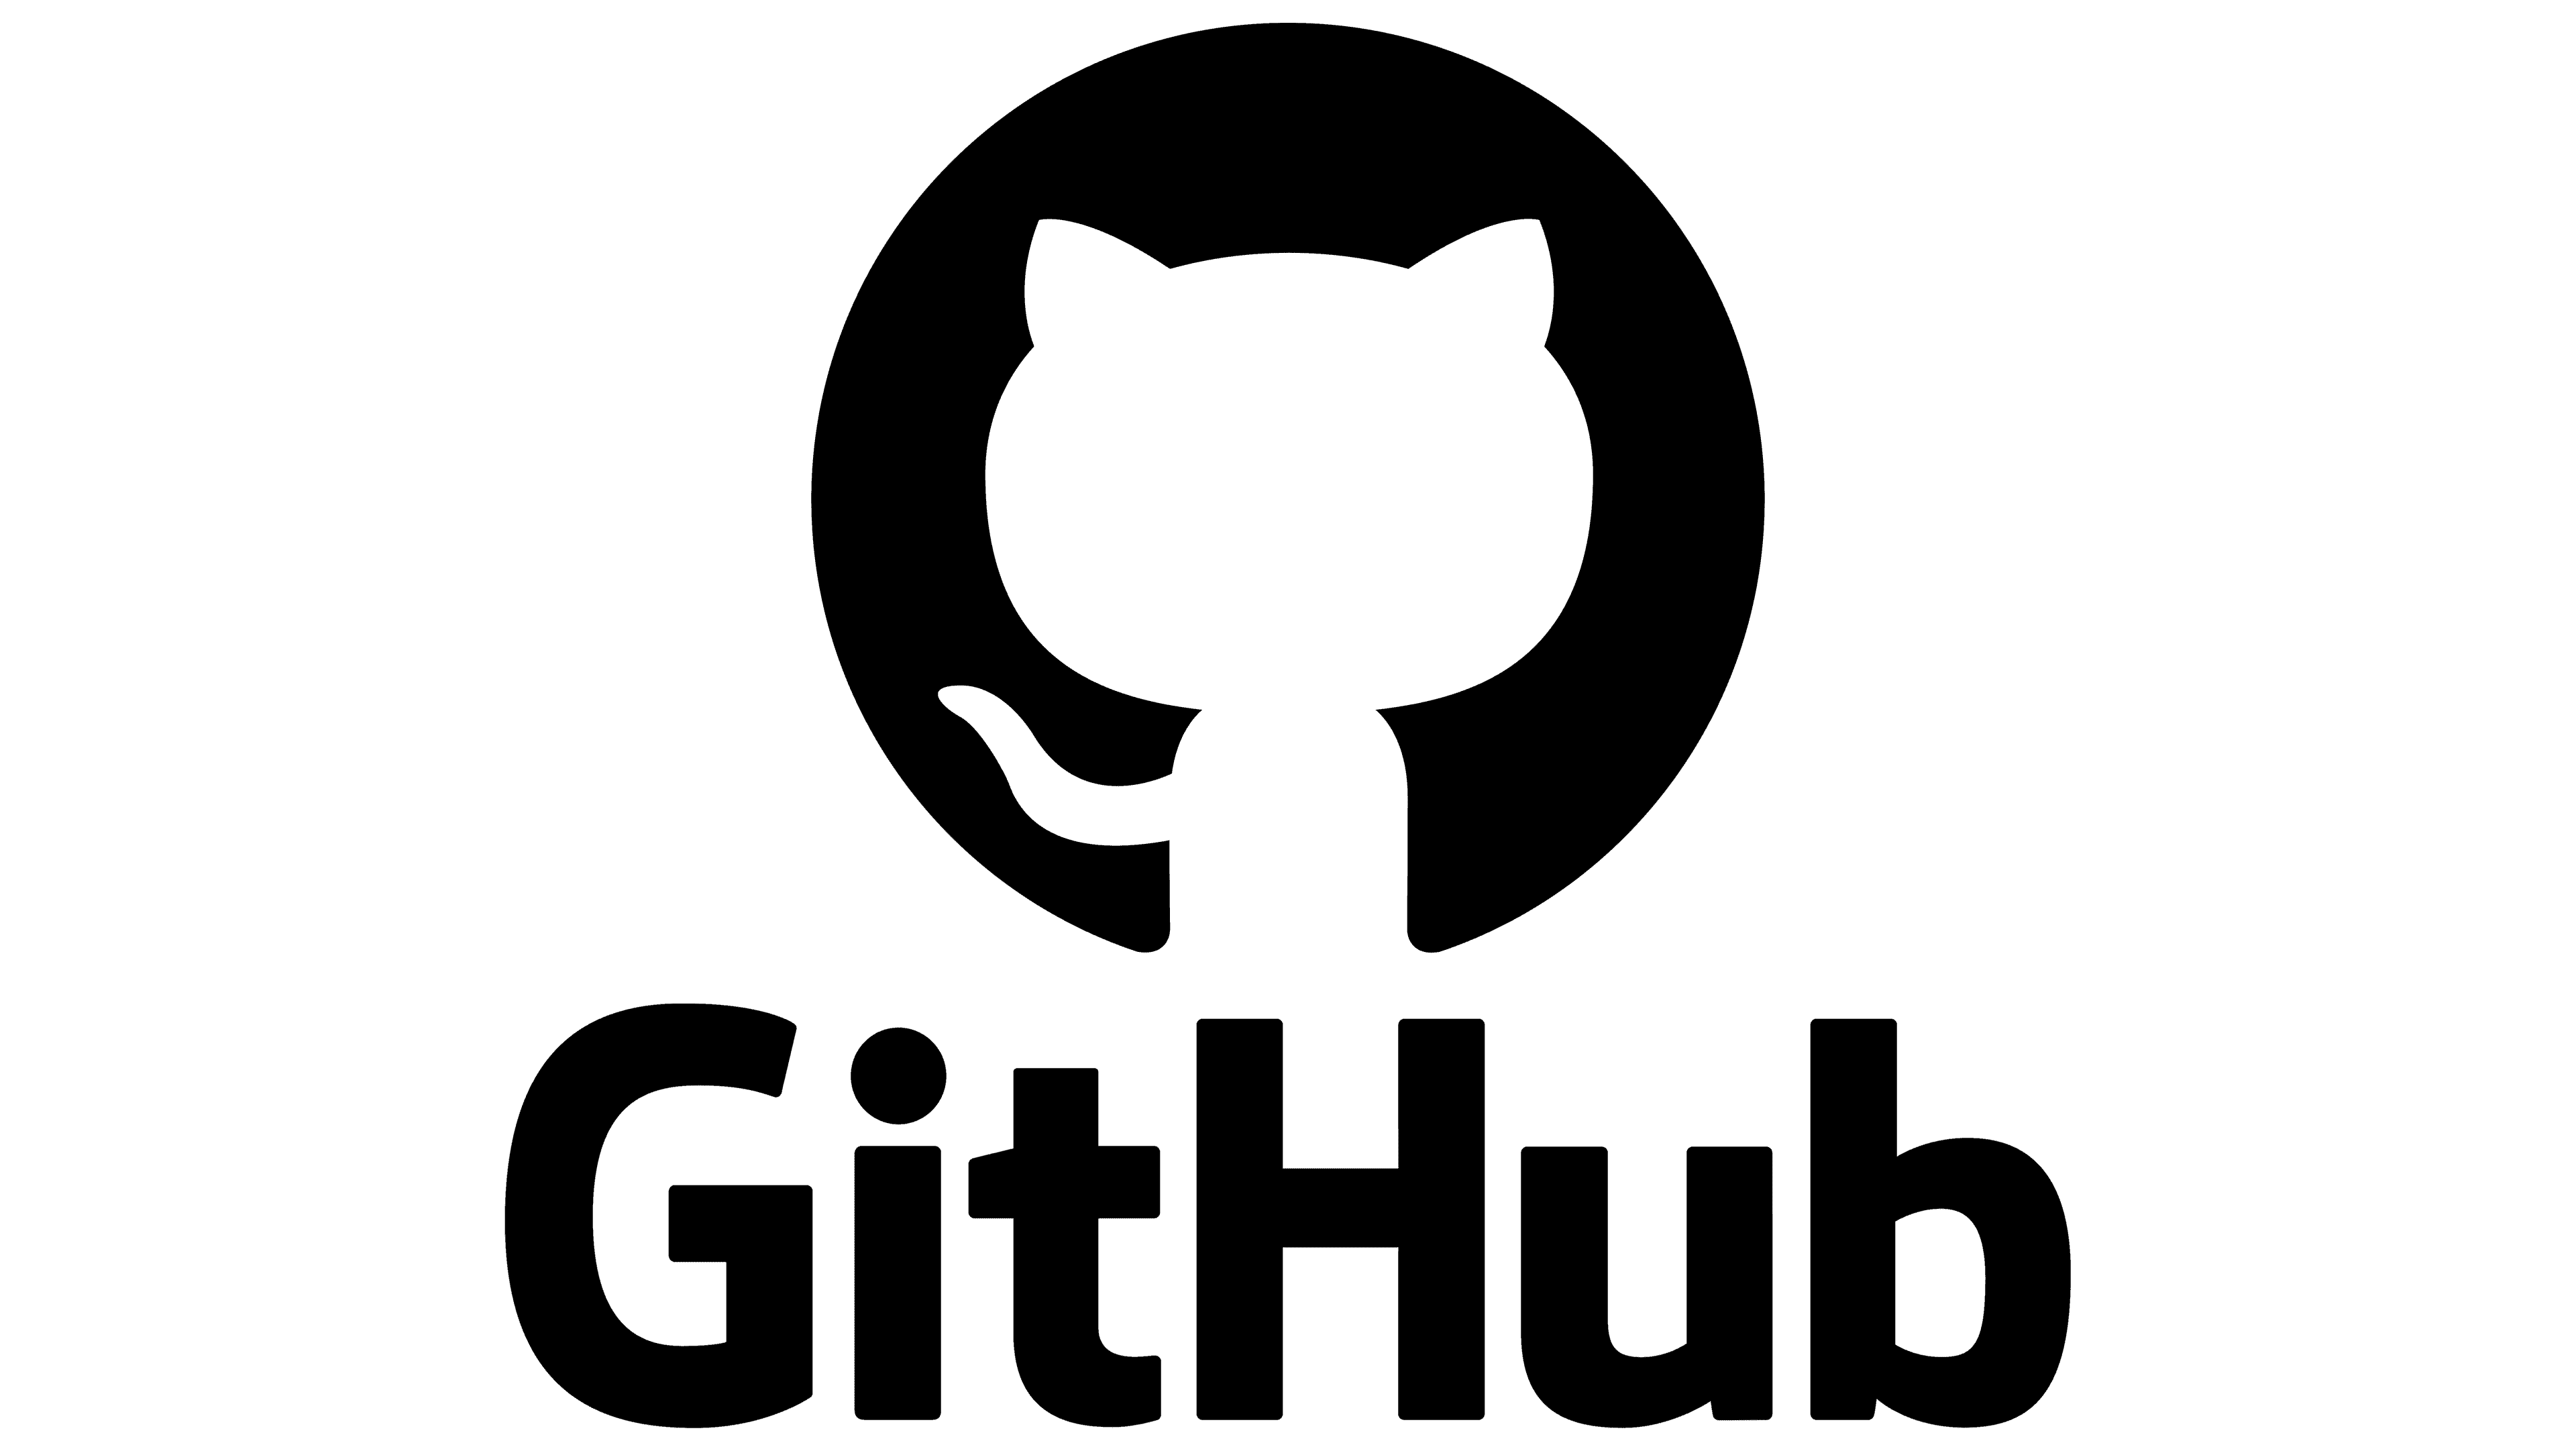 GitHub.png